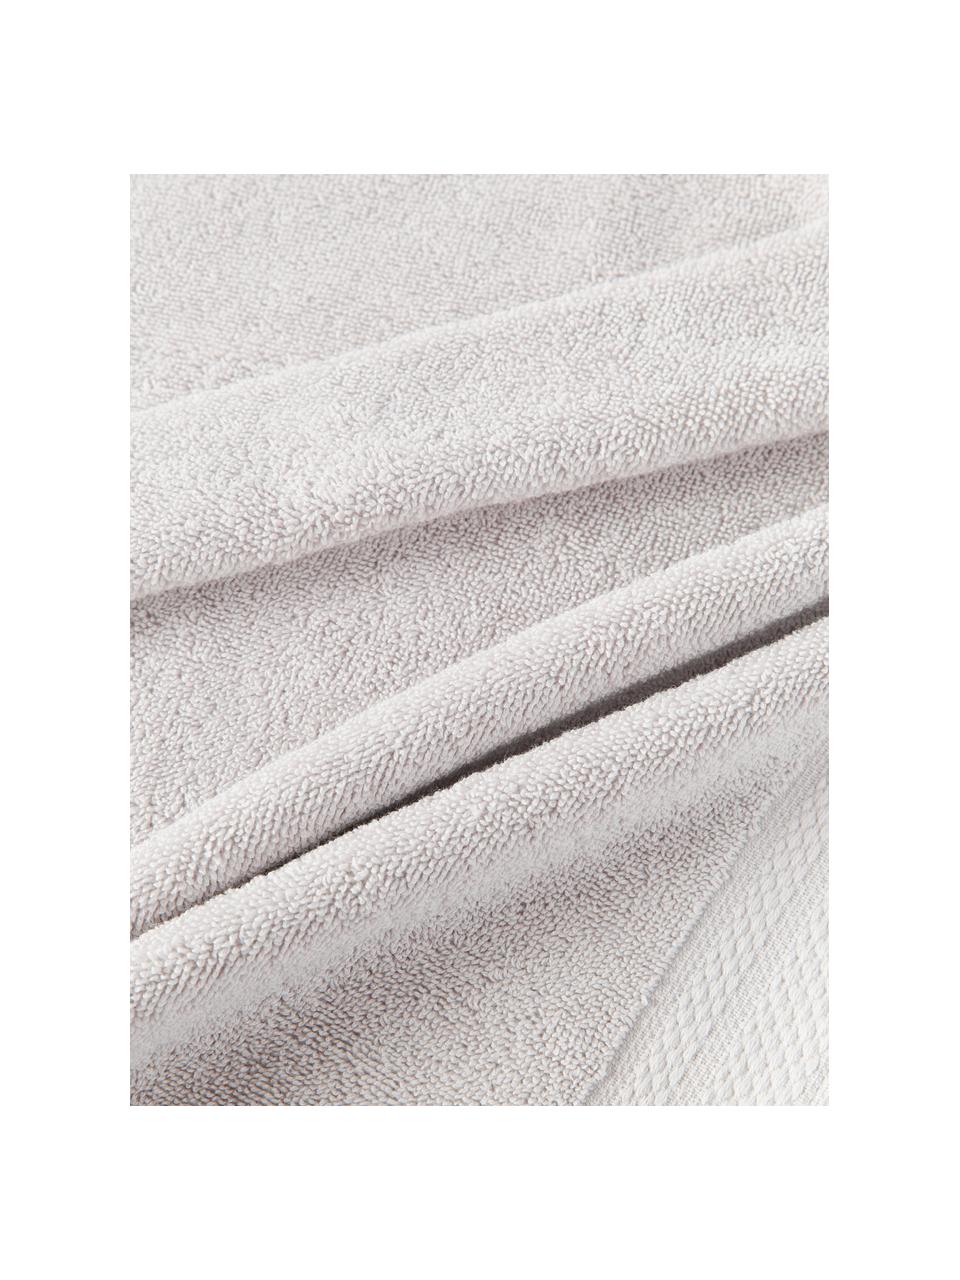 Set de toallas de algodón ecológico Premium, 4 uds., 100% algodón con certificado GOTS
Gramaje superior 600 g/m²

El material utilizado para este producto ha sido probado contra sustancias nocivas y está certificado según el STANDARD 100 por OEKO-TEX®,, IS025 189577, OETI., Gris claro, Set de diferentes tamaños